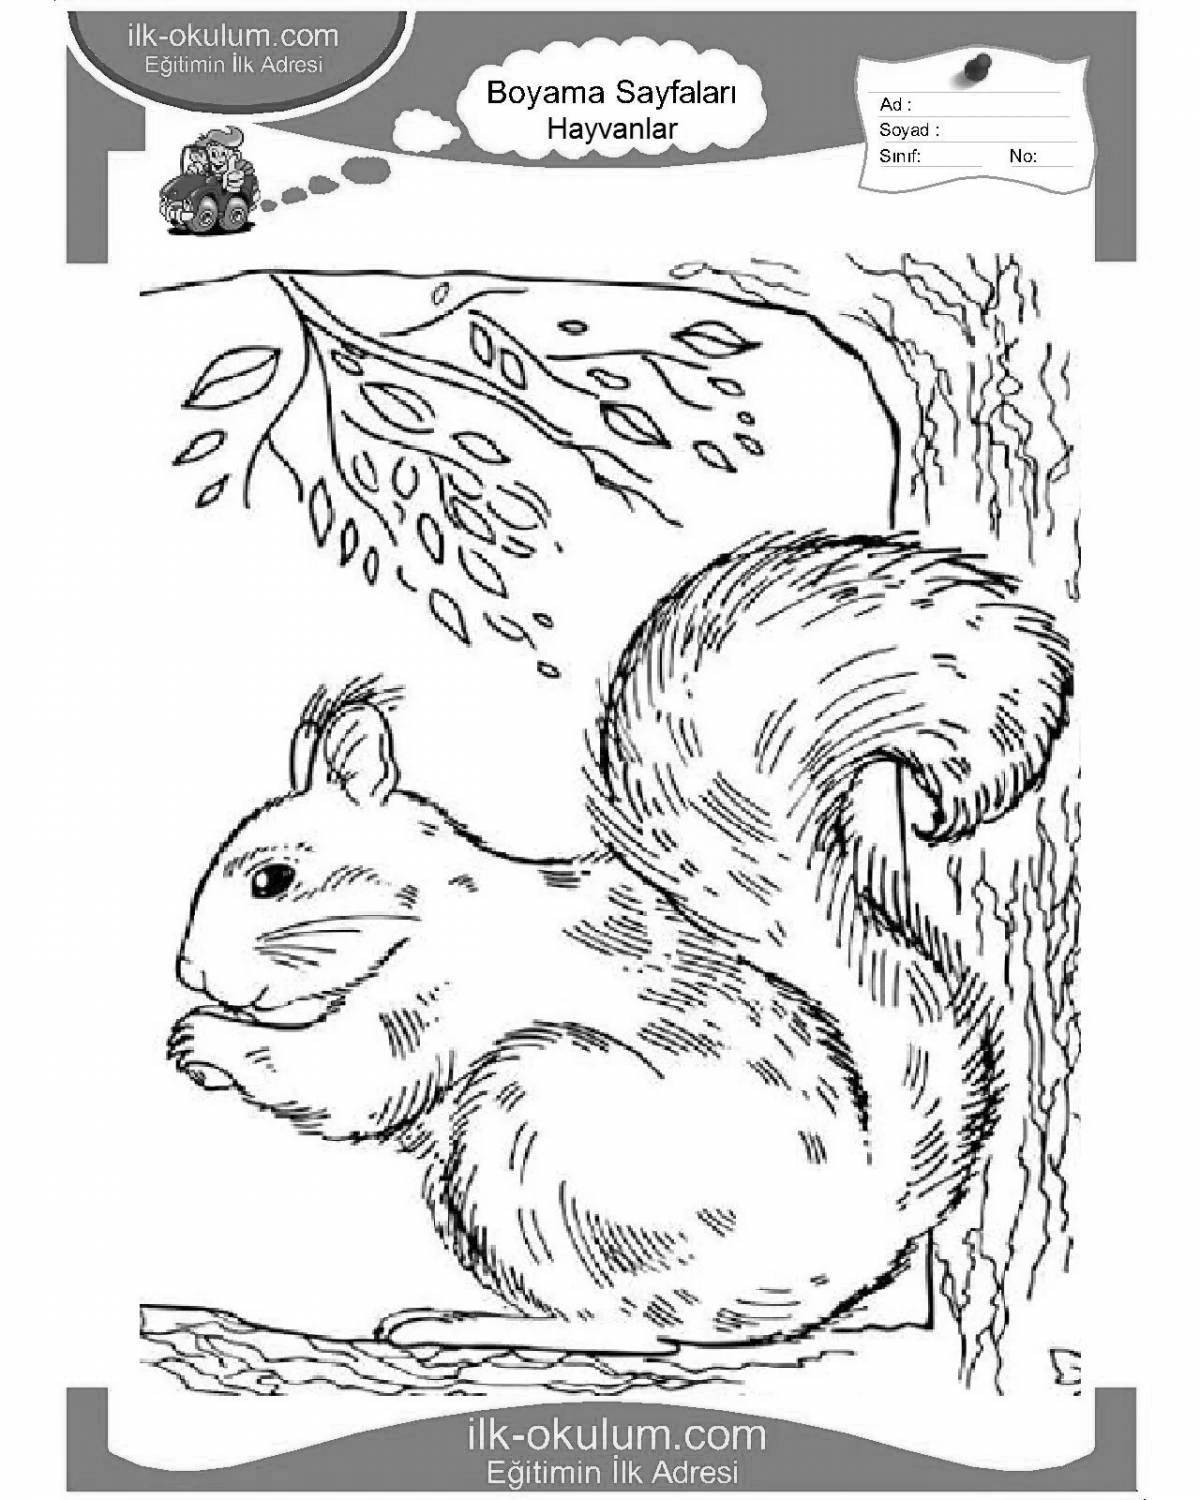 Attractive squirrel coloring book